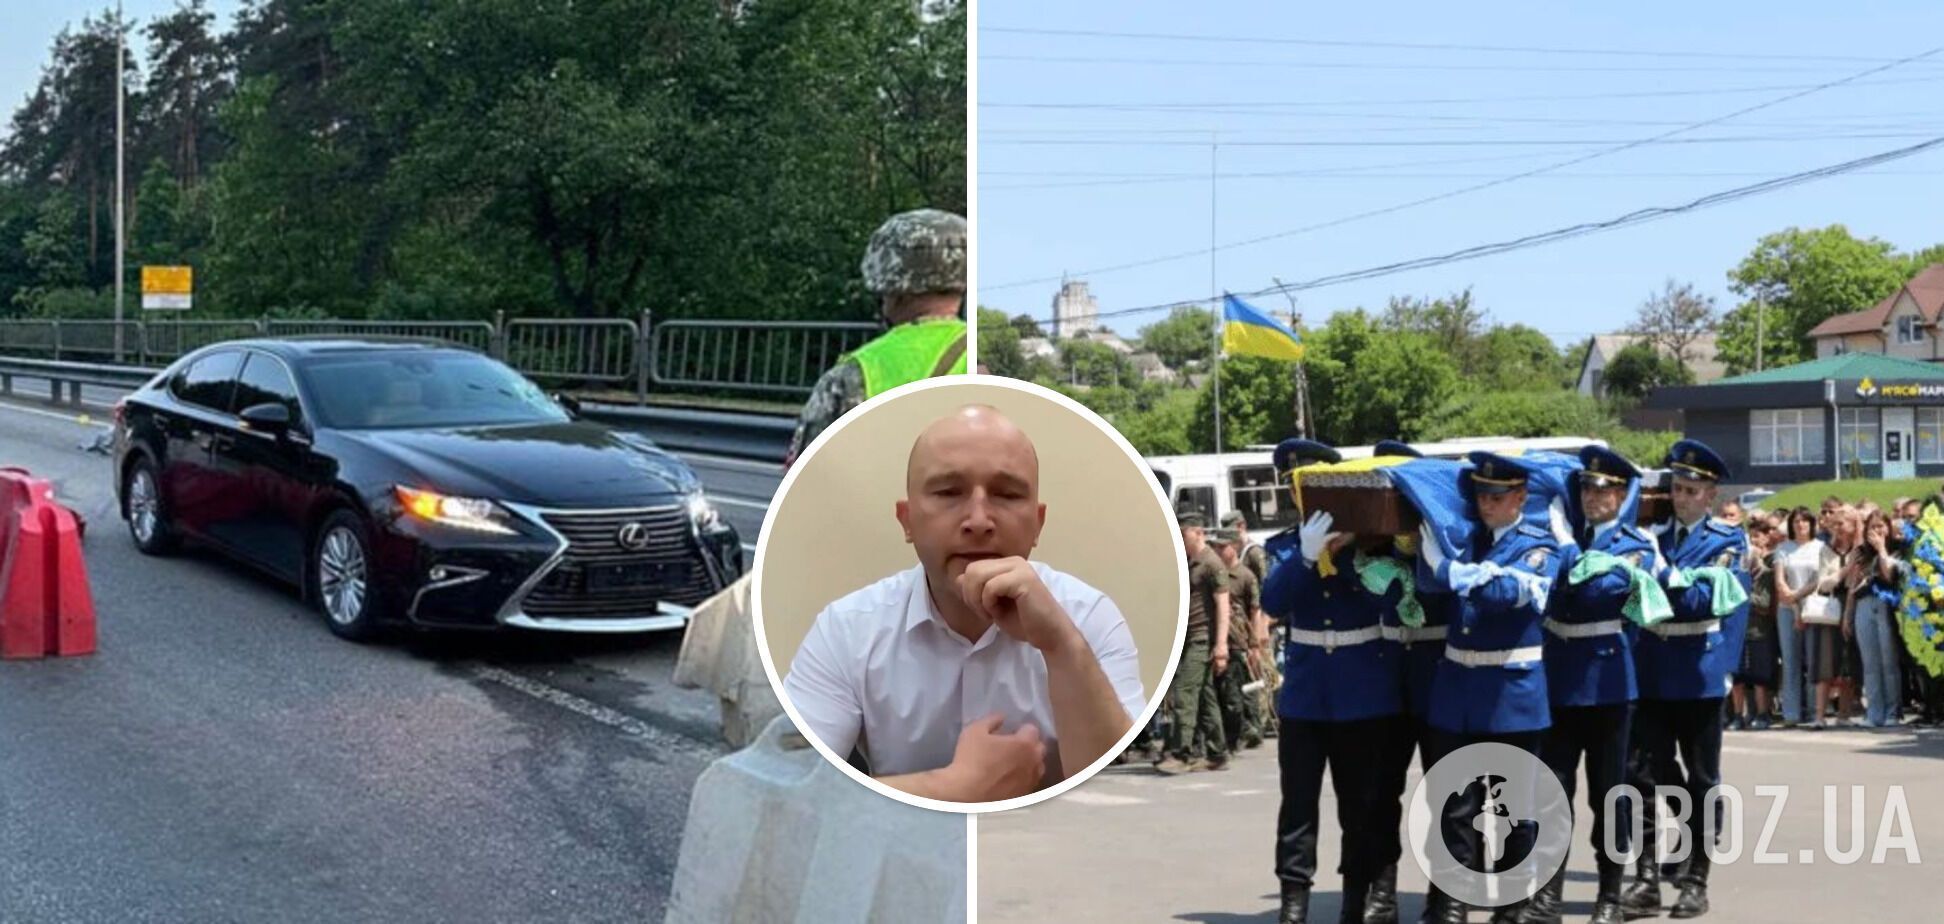 Олексій Тандир підозрюється у смертельній ДТП у Києві